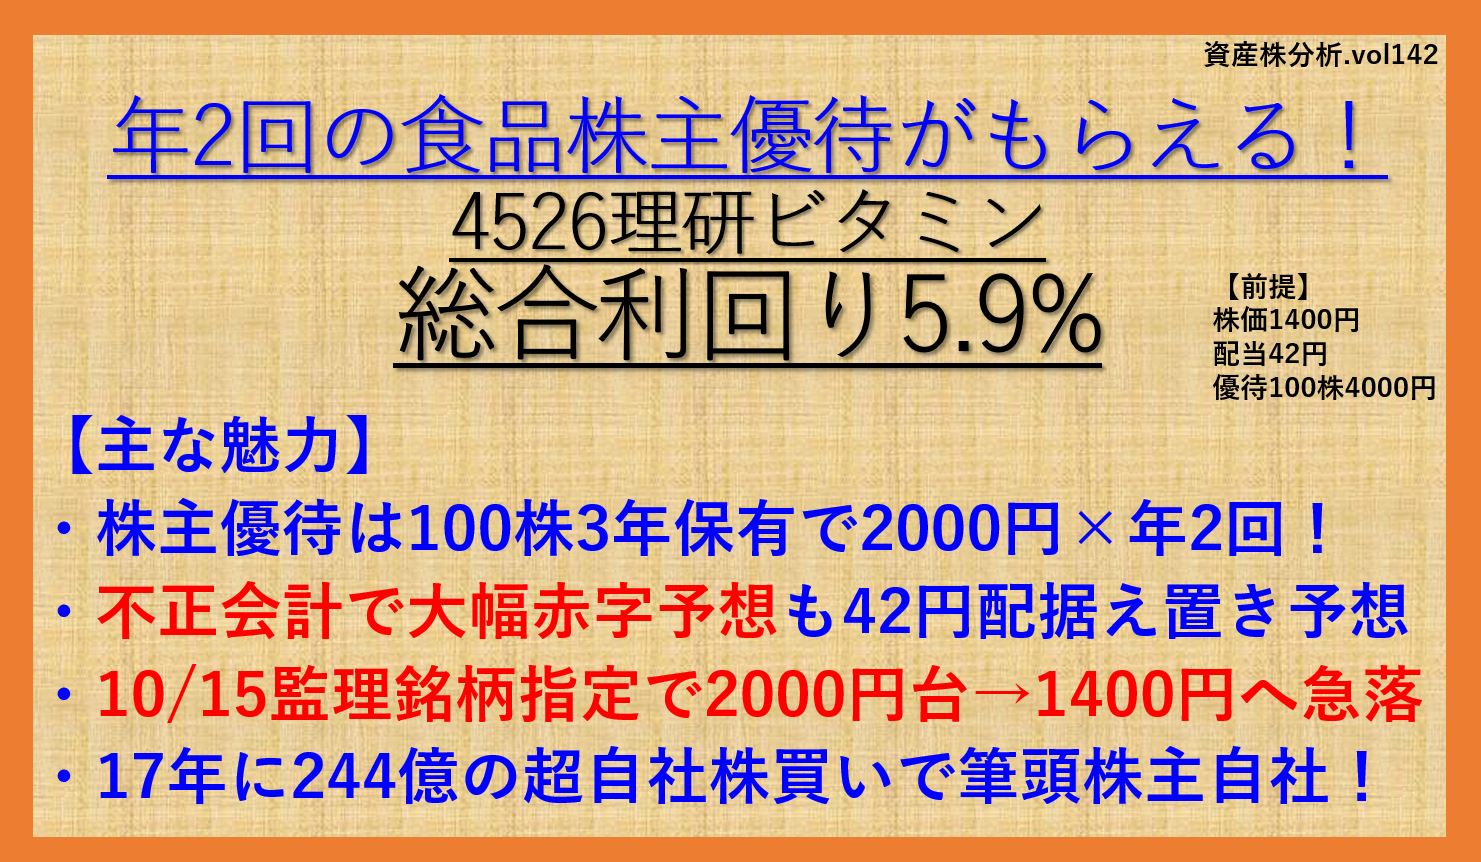 理研ビタミン-4526-資産株